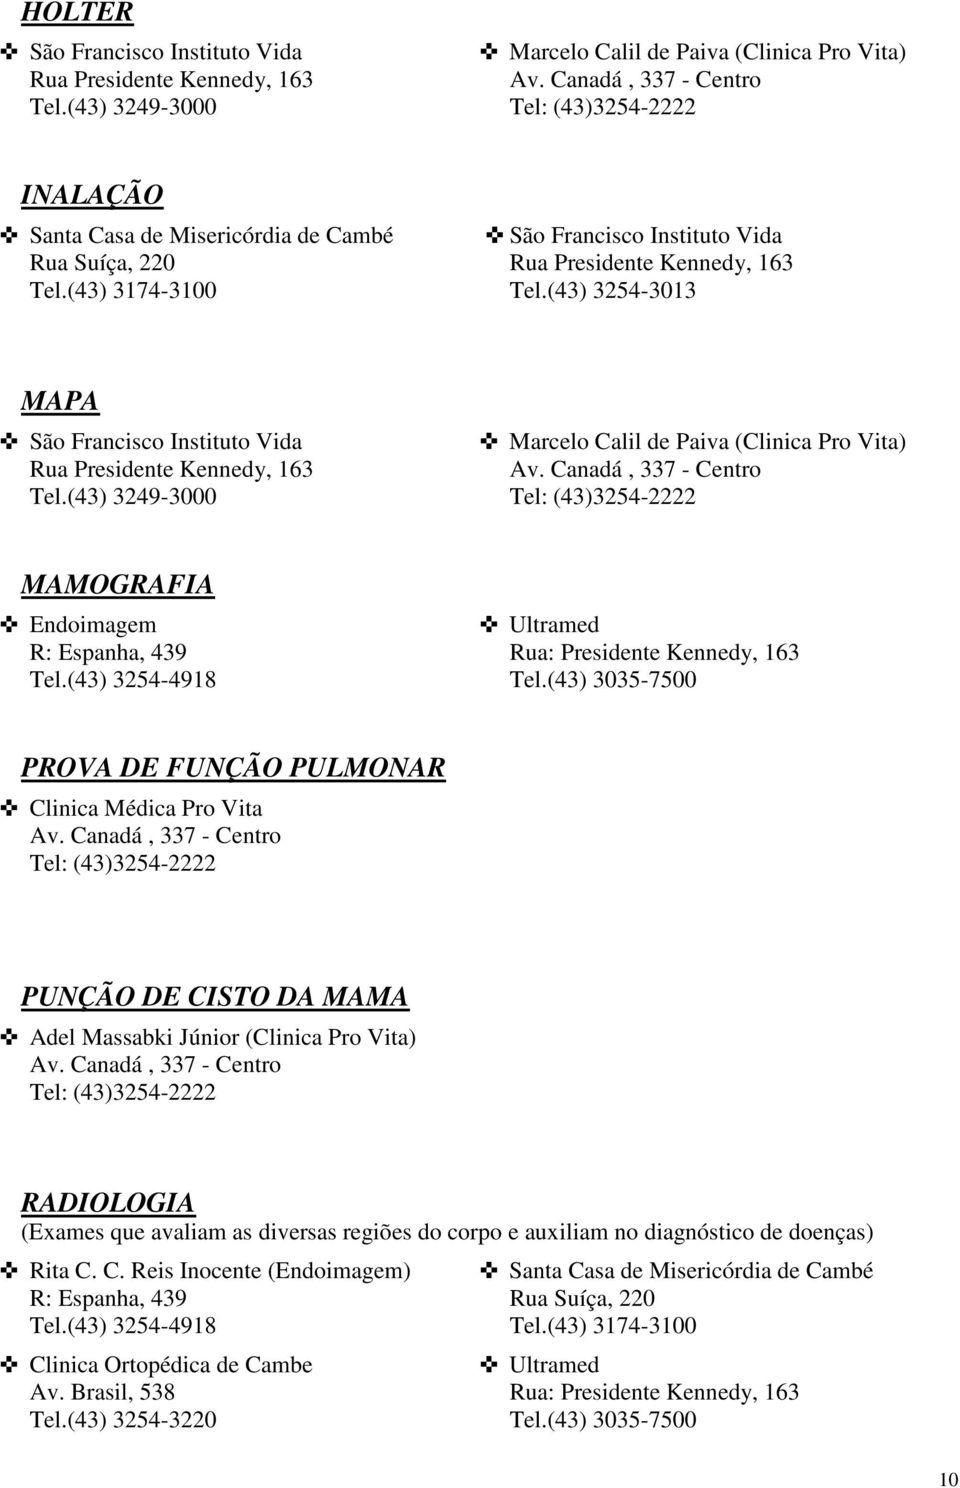 (43) 3035-7500 PROVA DE FUNÇÃO PULMONAR Clinica Médica Pro Vita PUNÇÃO DE CISTO DA MAMA Adel Massabki Júnior (Clinica Pro Vita) RADIOLOGIA